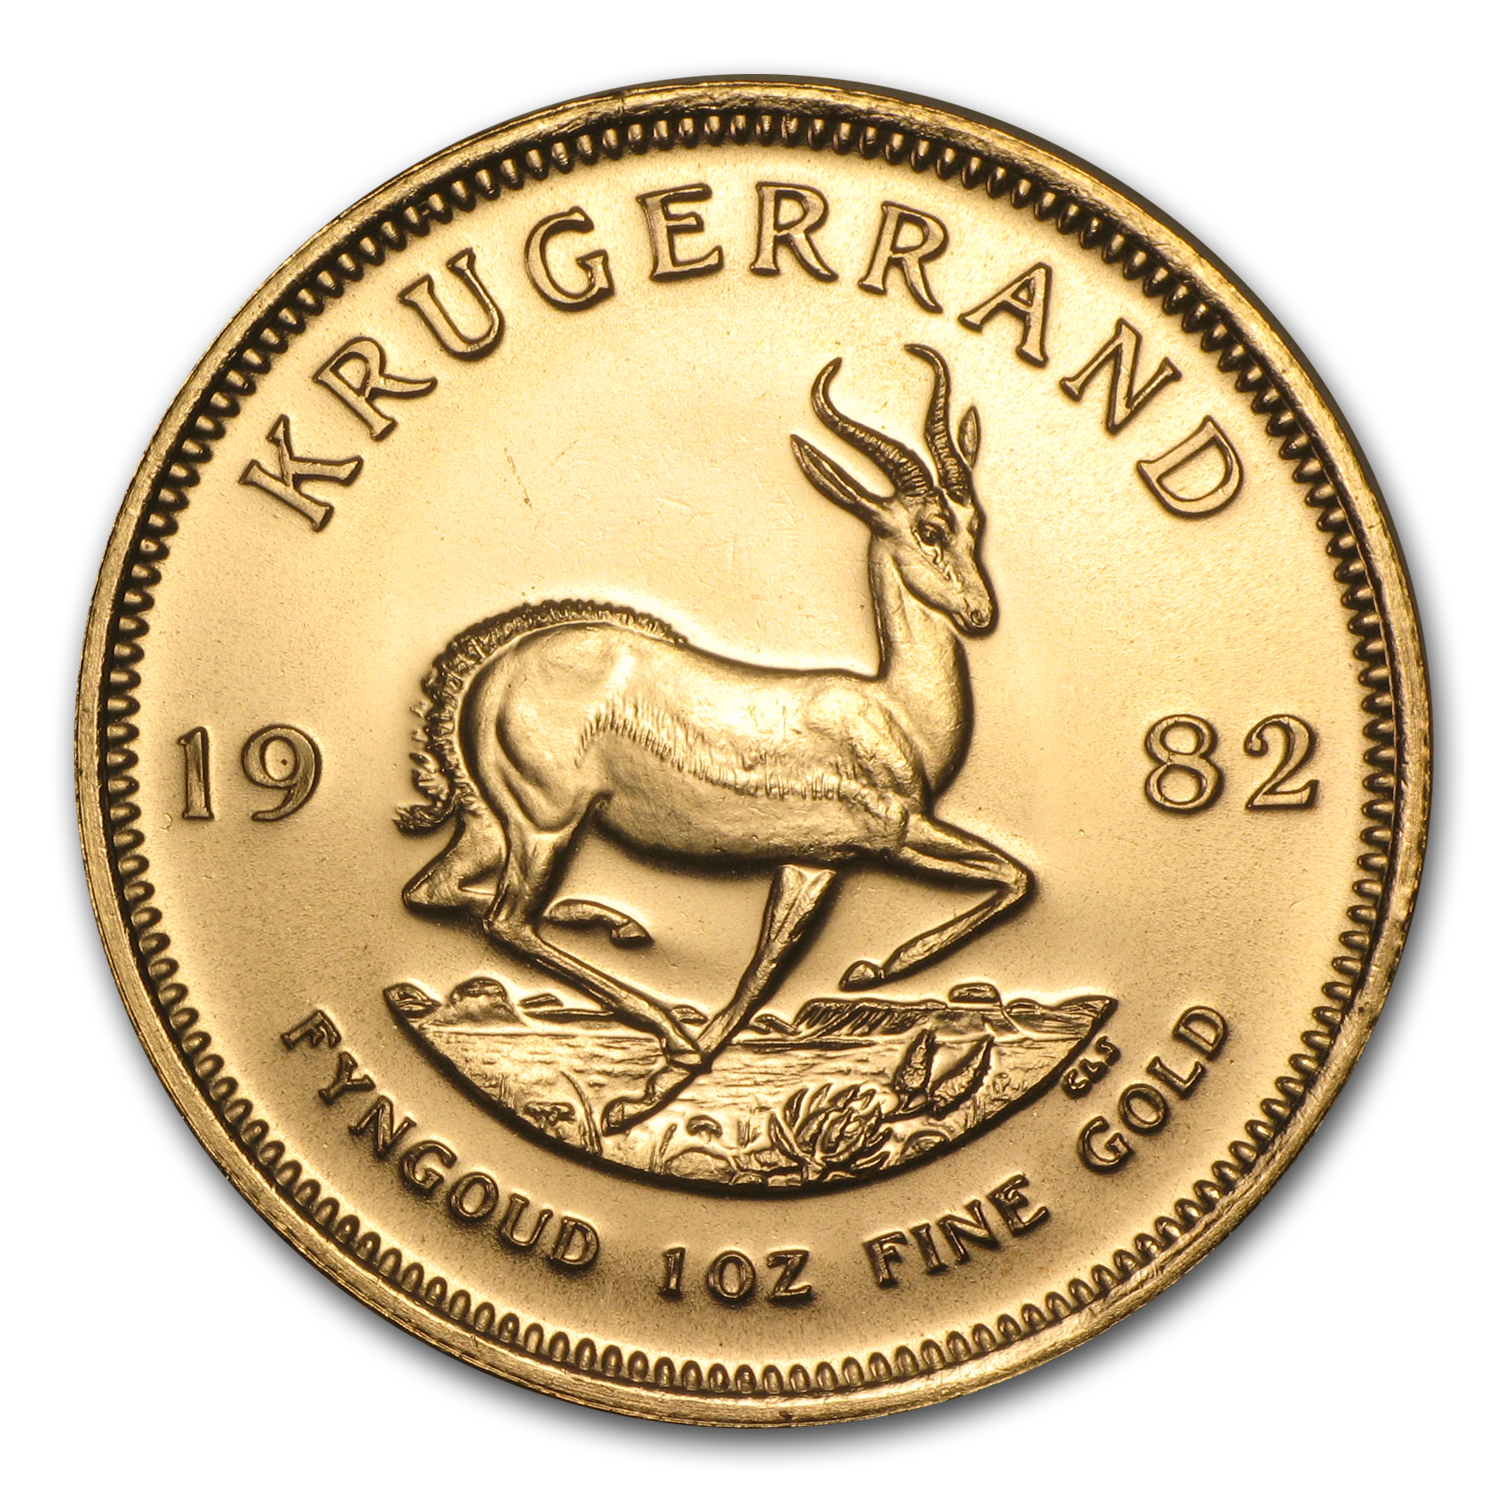 Buy 1982 South Africa 1 oz Gold Krugerrand BU